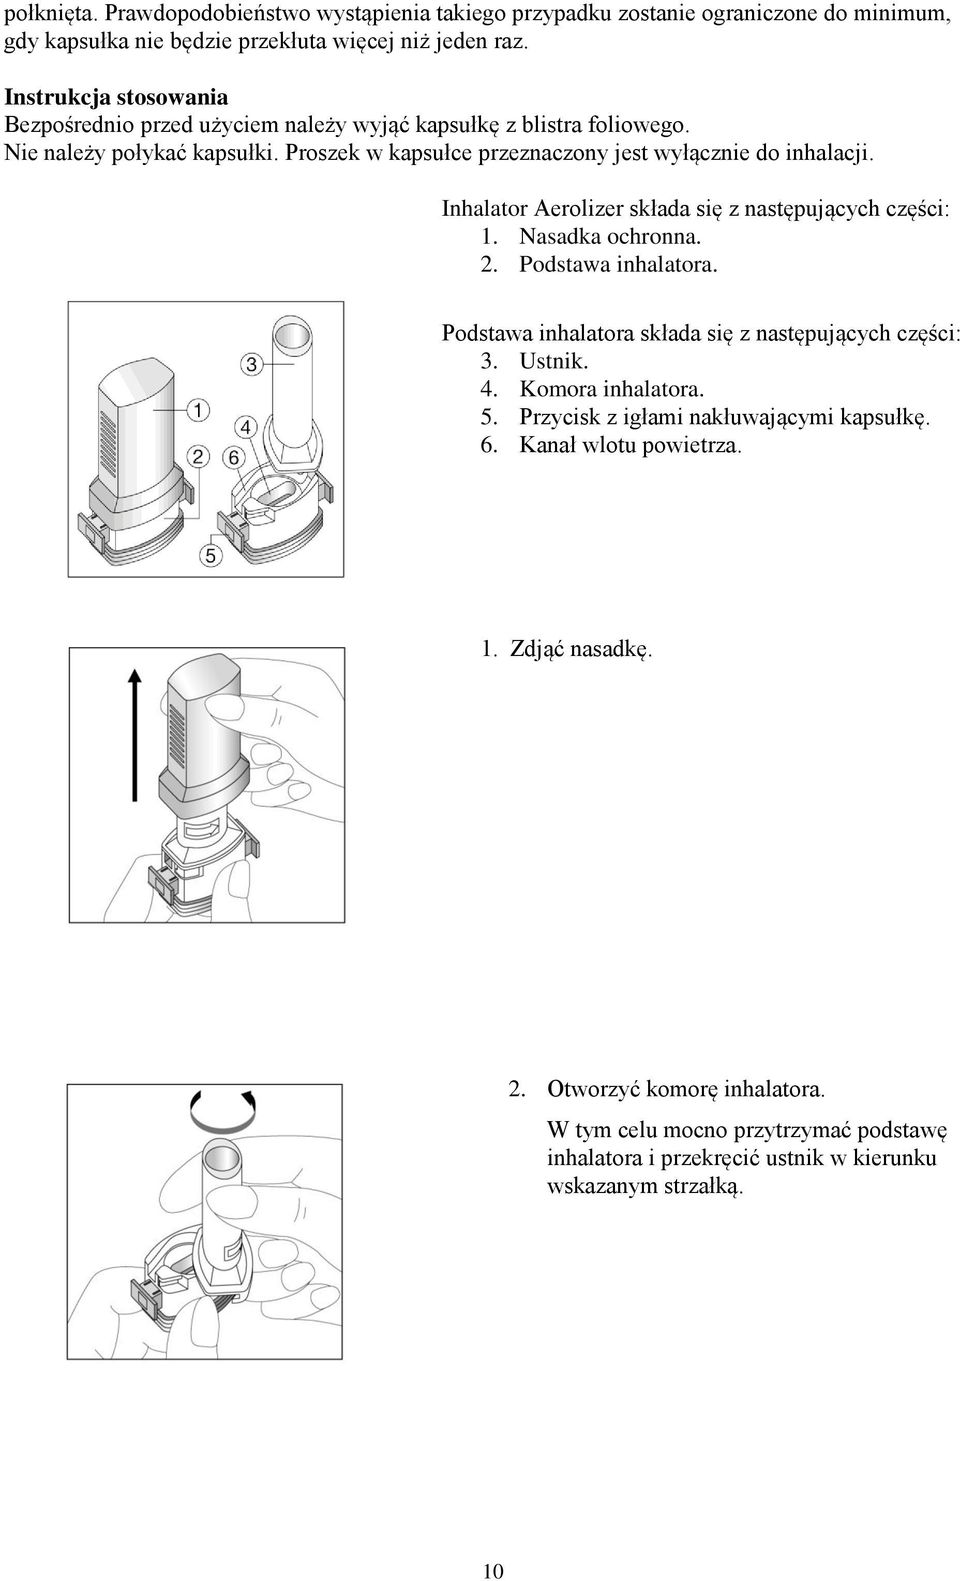 Inhalator Aerolizer składa się z następujących części: 1. Nasadka ochronna. 2. Podstawa inhalatora. Podstawa inhalatora składa się z następujących części: 3. Ustnik. 4.